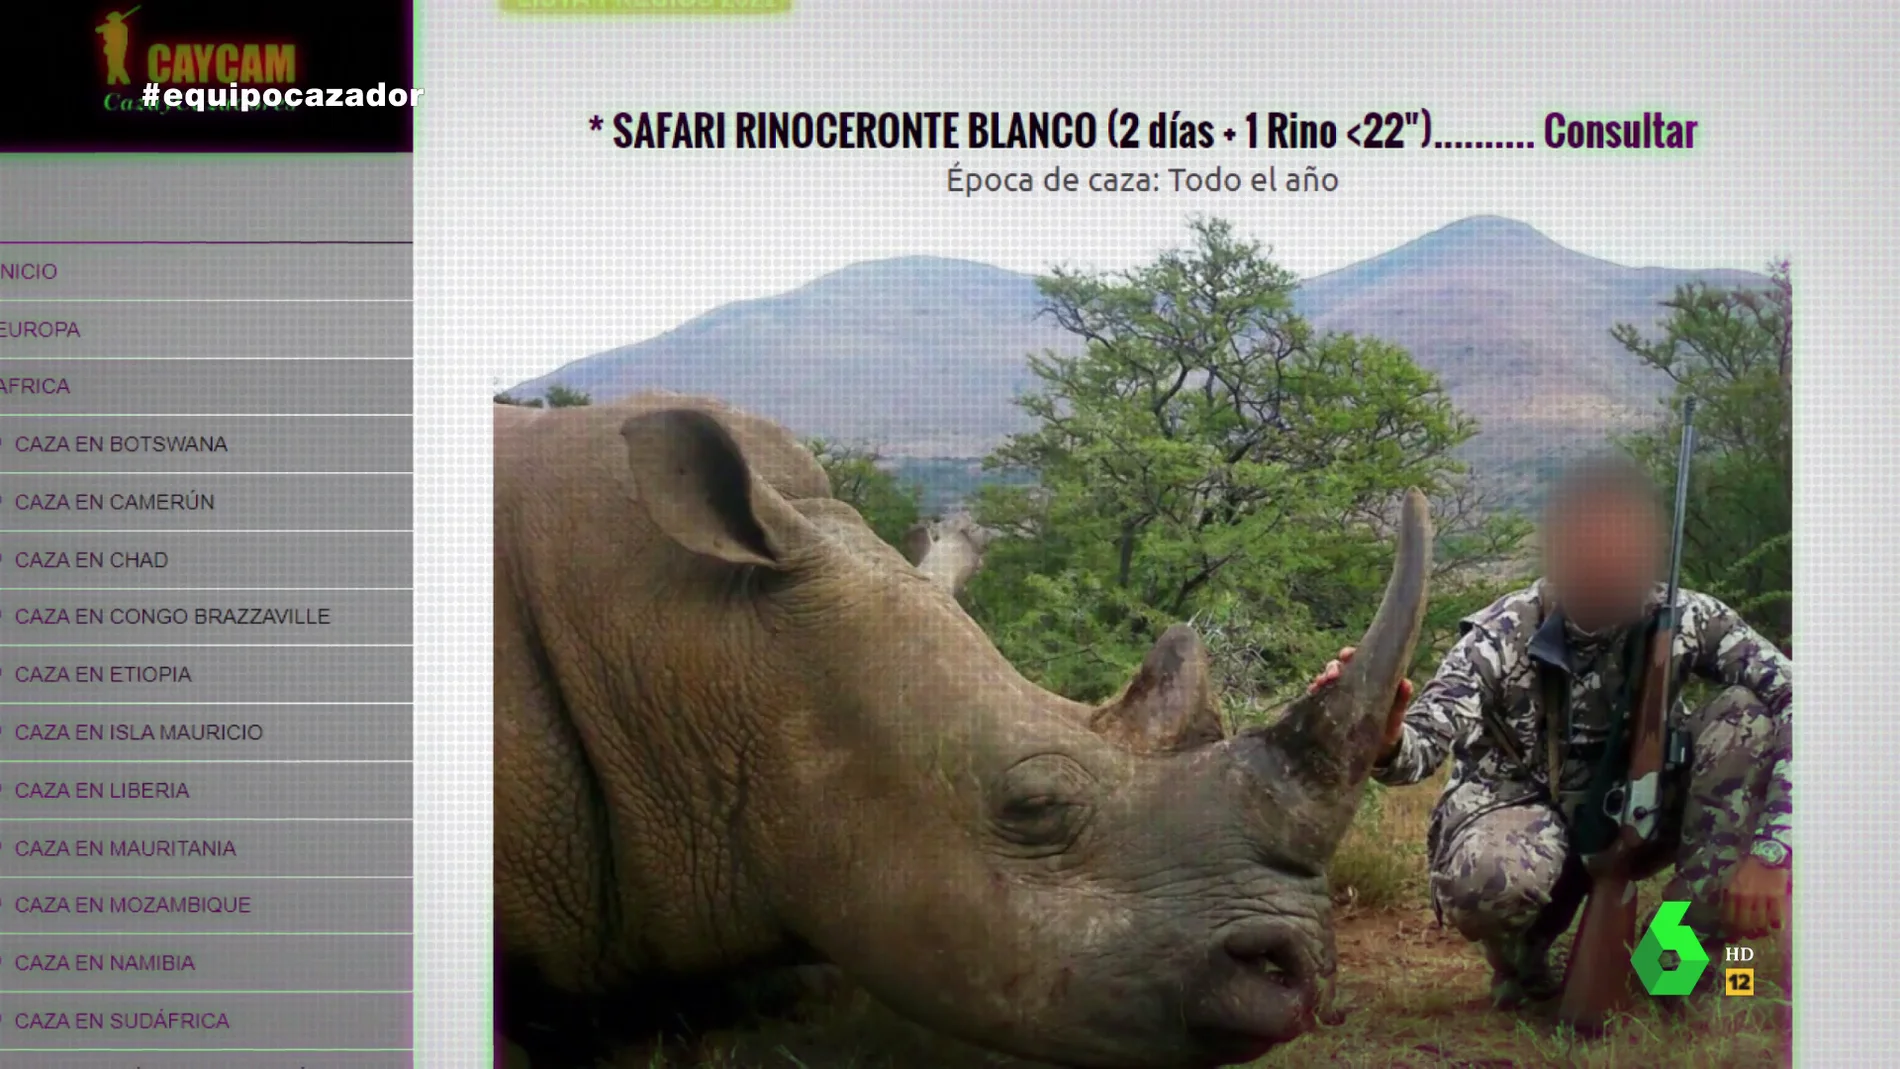 Cazar un rinoceronte cuesta 60.000 euros, un león 30.000, una jirafa 2.500... Gloria Serra revela los precios que se pagan por matar a animales en safaris